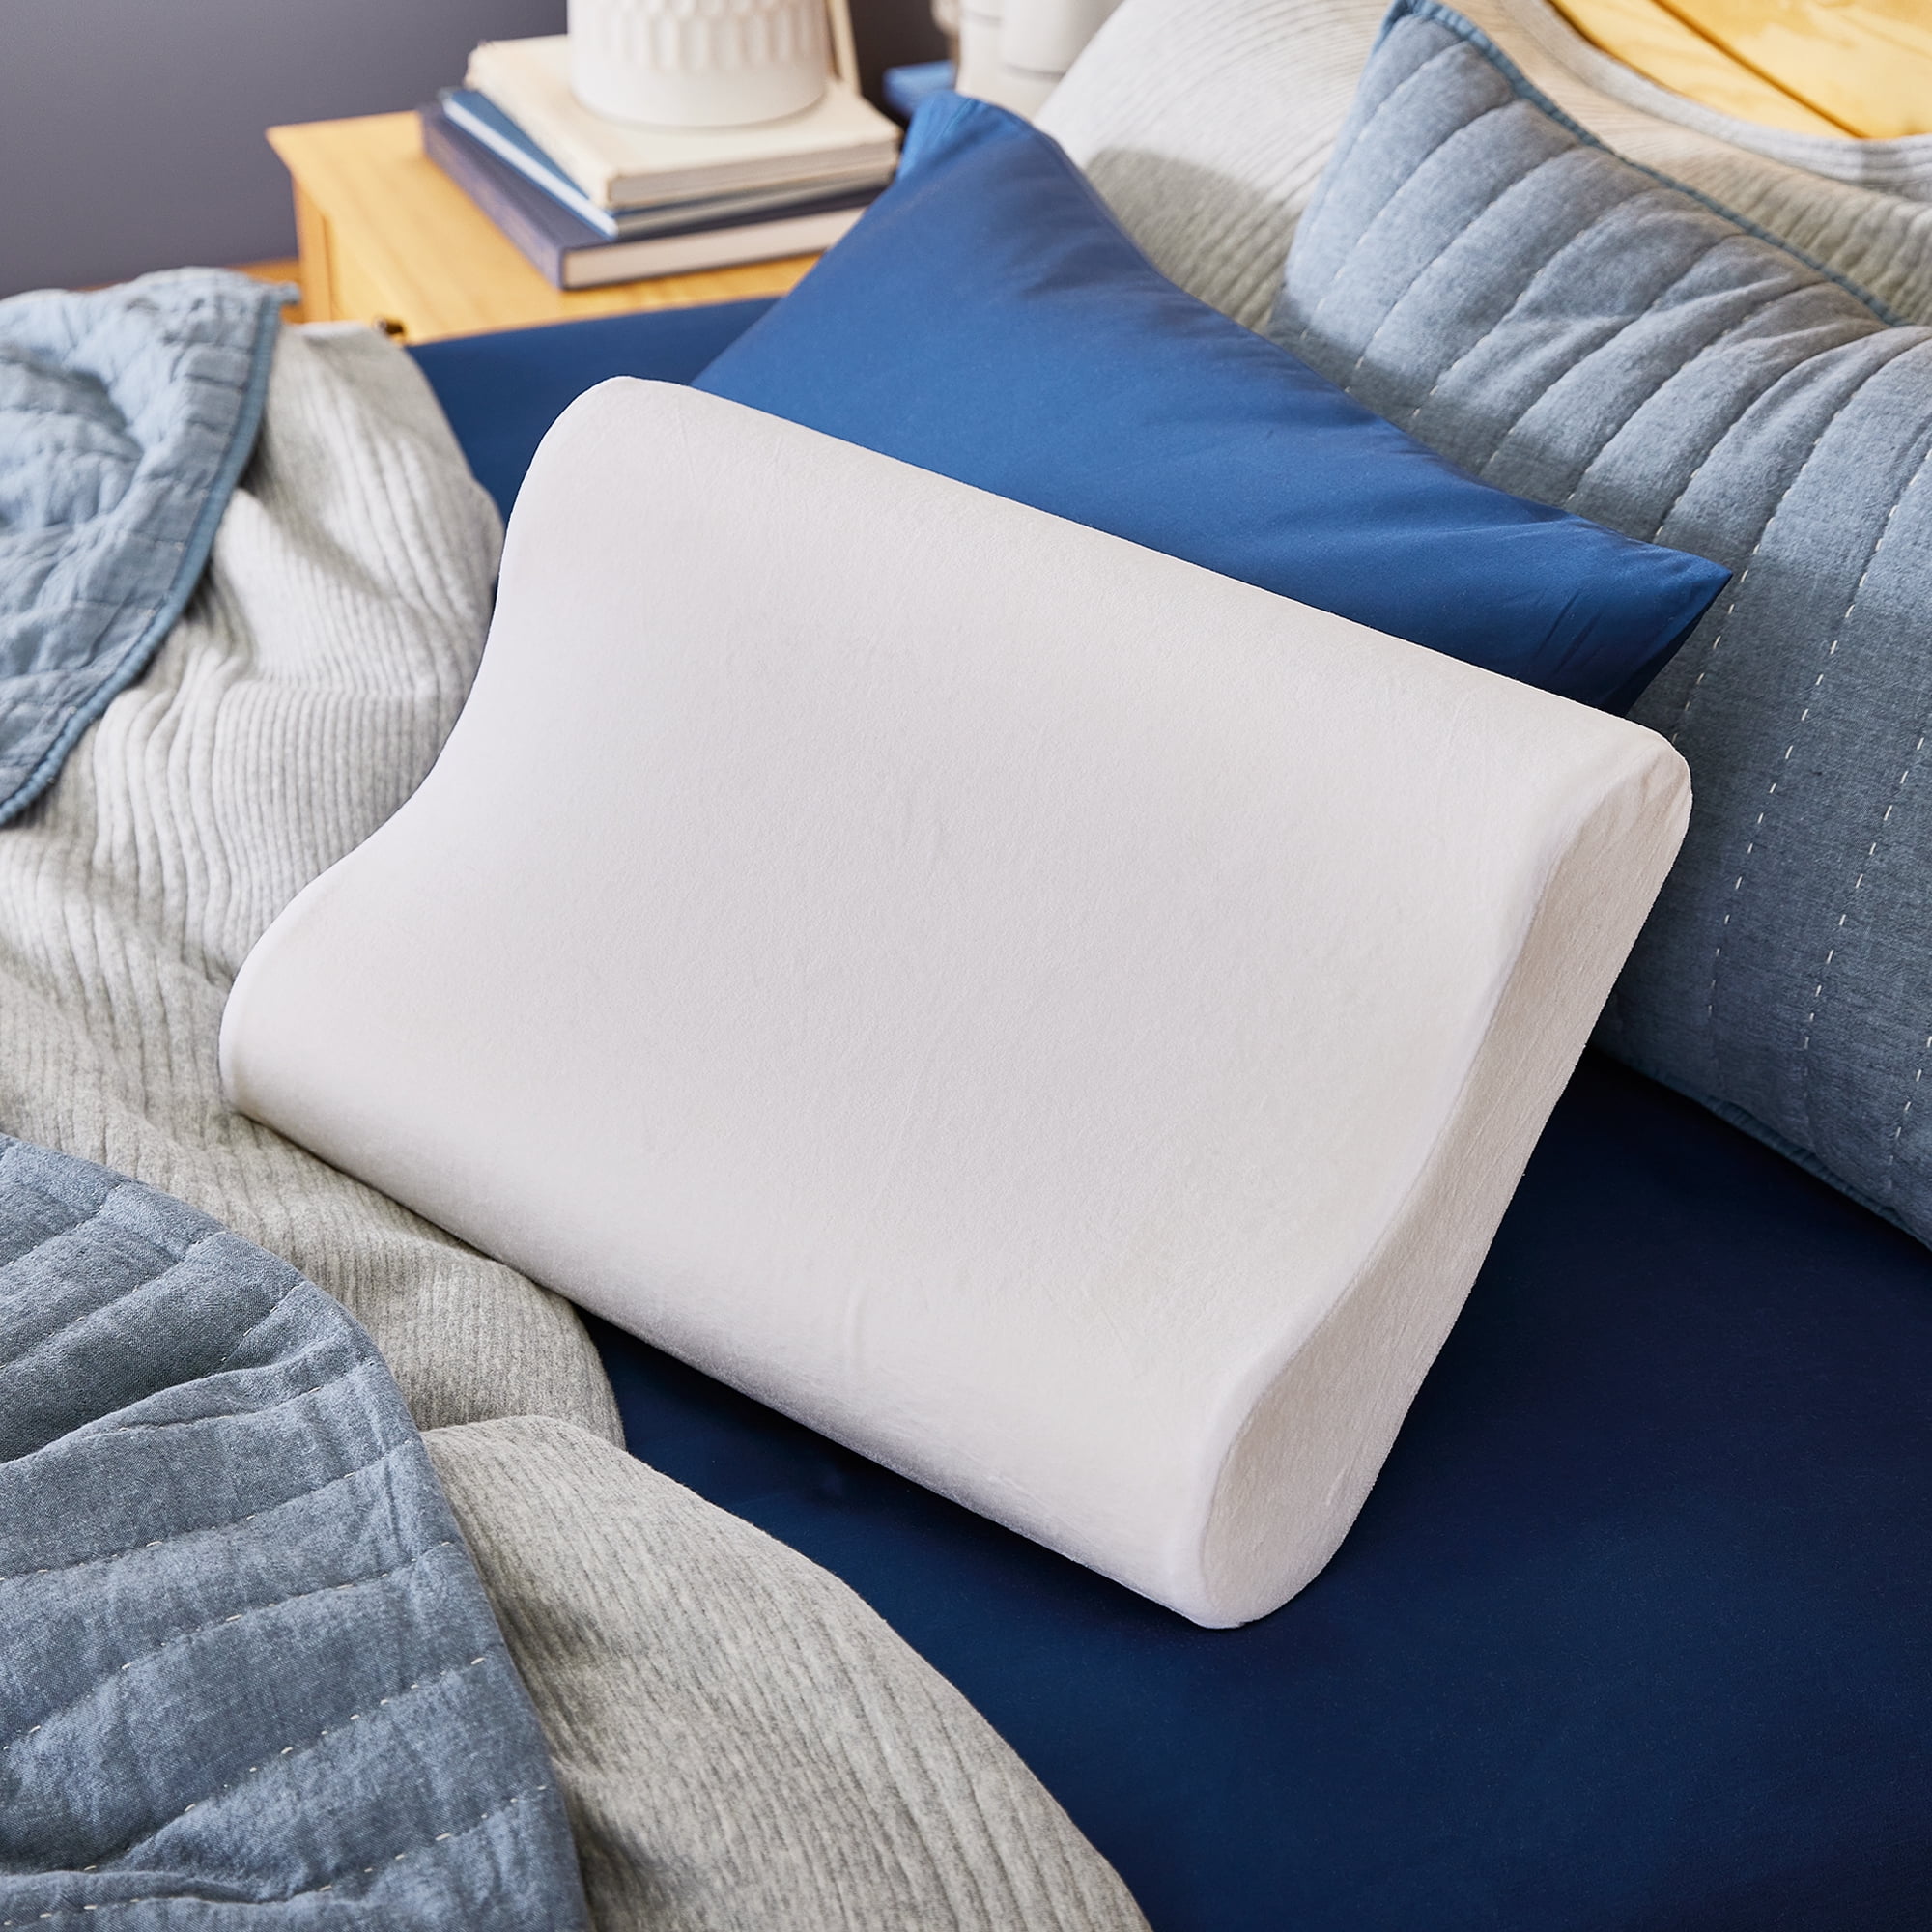 Soft Pillow Memory Foam Lumbar, Orthopedic Pillow Back